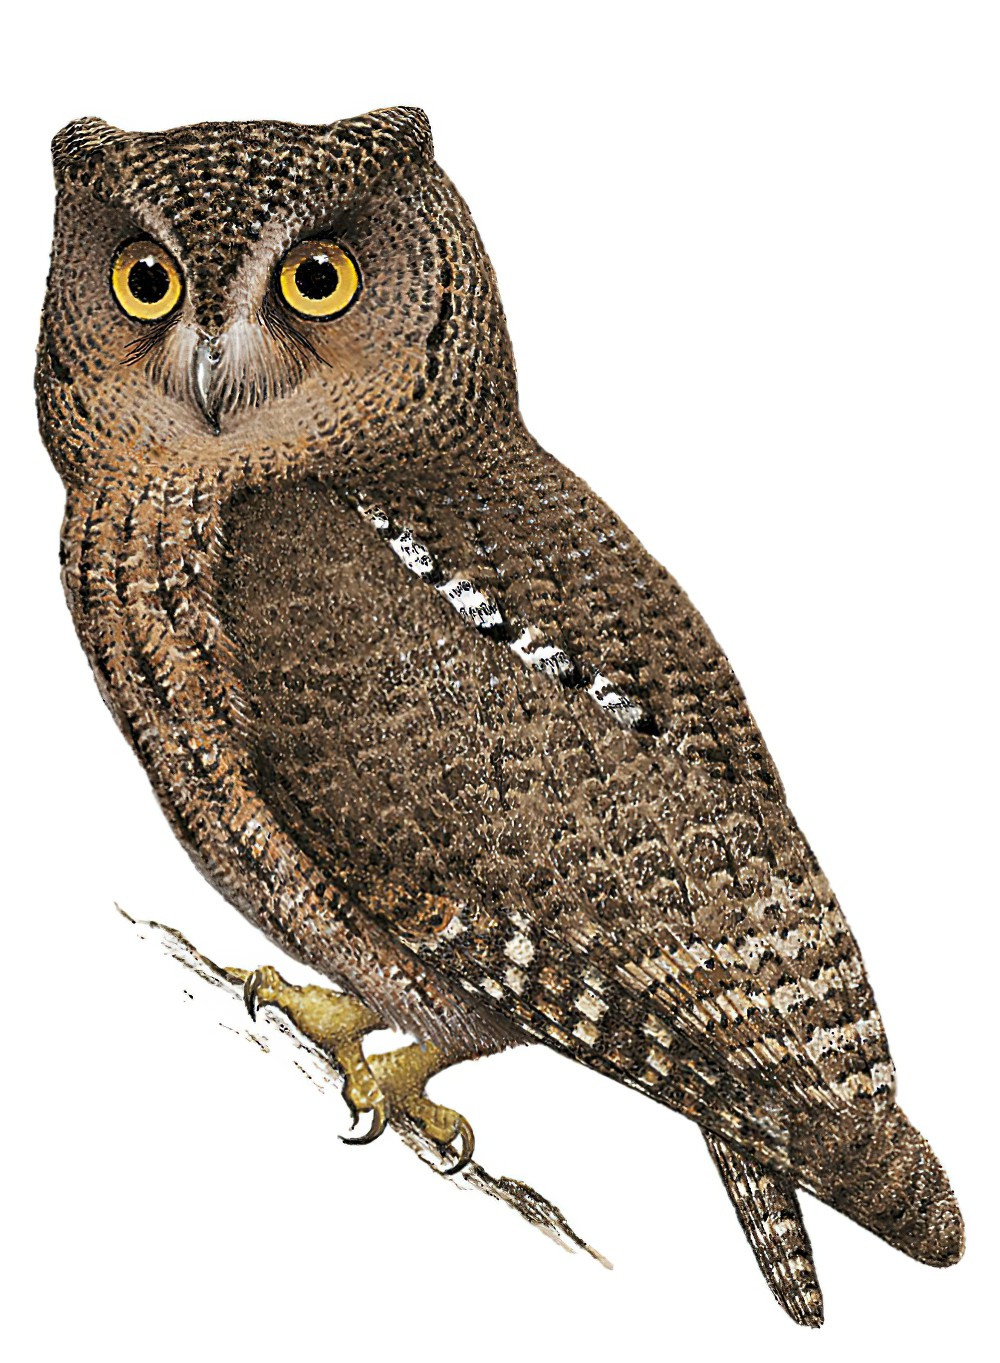 苏拉角鸮 / Sula Scops Owl / Otus sulaensis